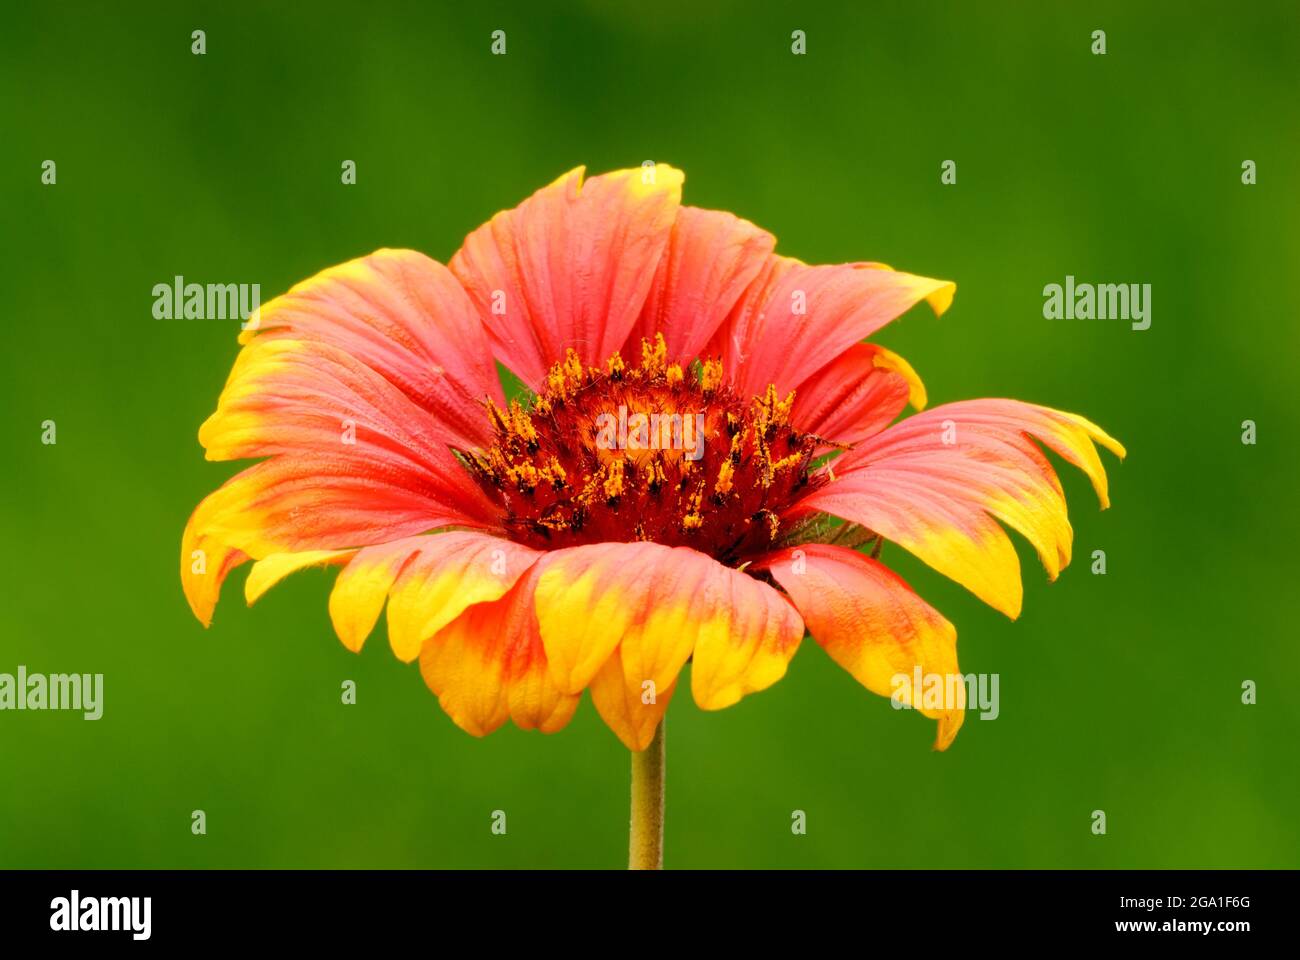 Indische Decke Blume mit schönen Blütenblättern in rot-gelb. Unscharfer natürlicher grüner Hintergrund, Nahaufnahme. Im Blumenbeet. Gattung Gaillardia pulchella. Stockfoto